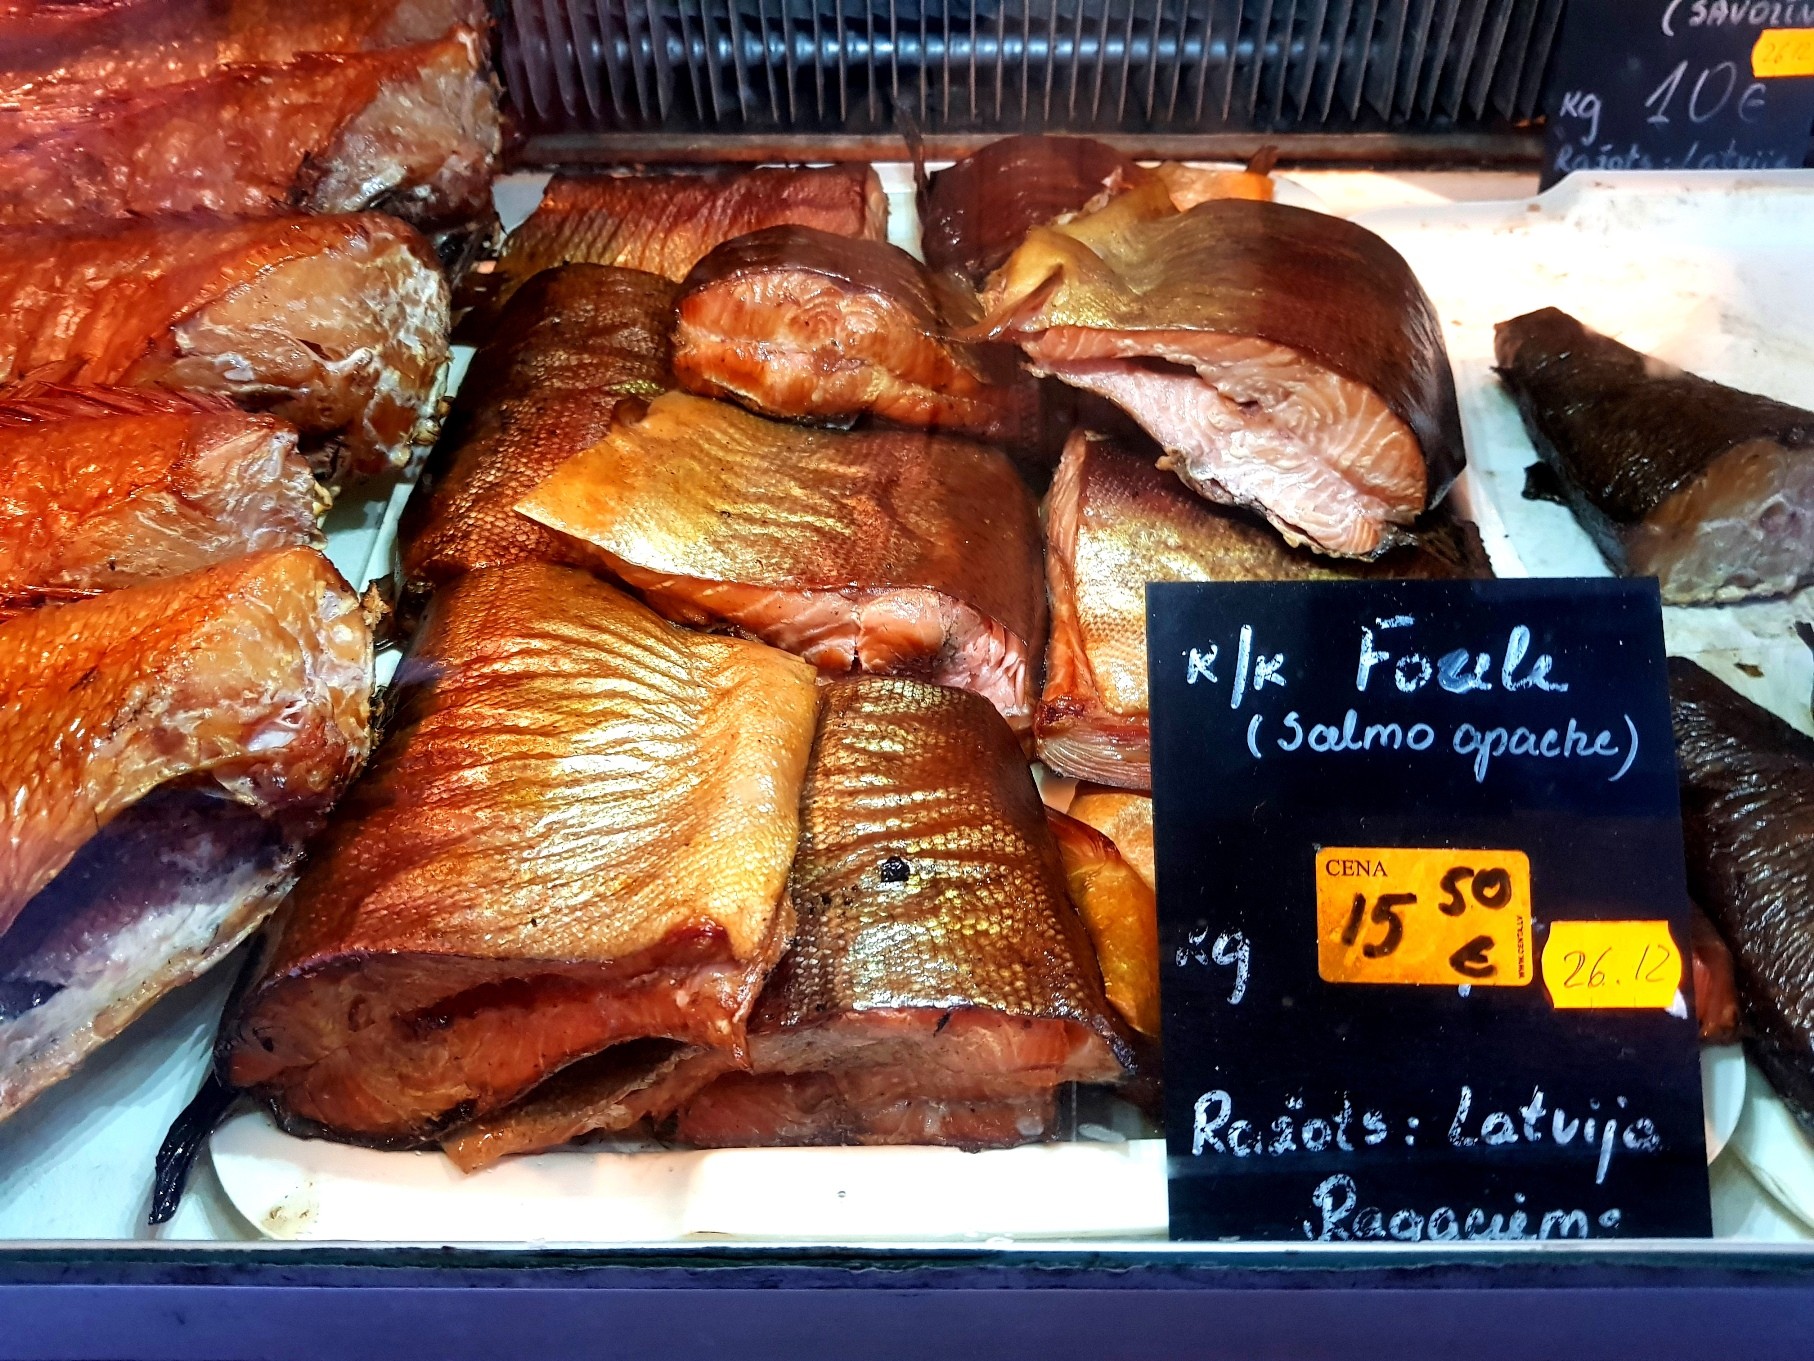 Ēdam zivis un esam veseli! Veselība un dzīvildze ar Latvijā ražotām zivīm. Kur tās nopirkt?  (Bilde 3)